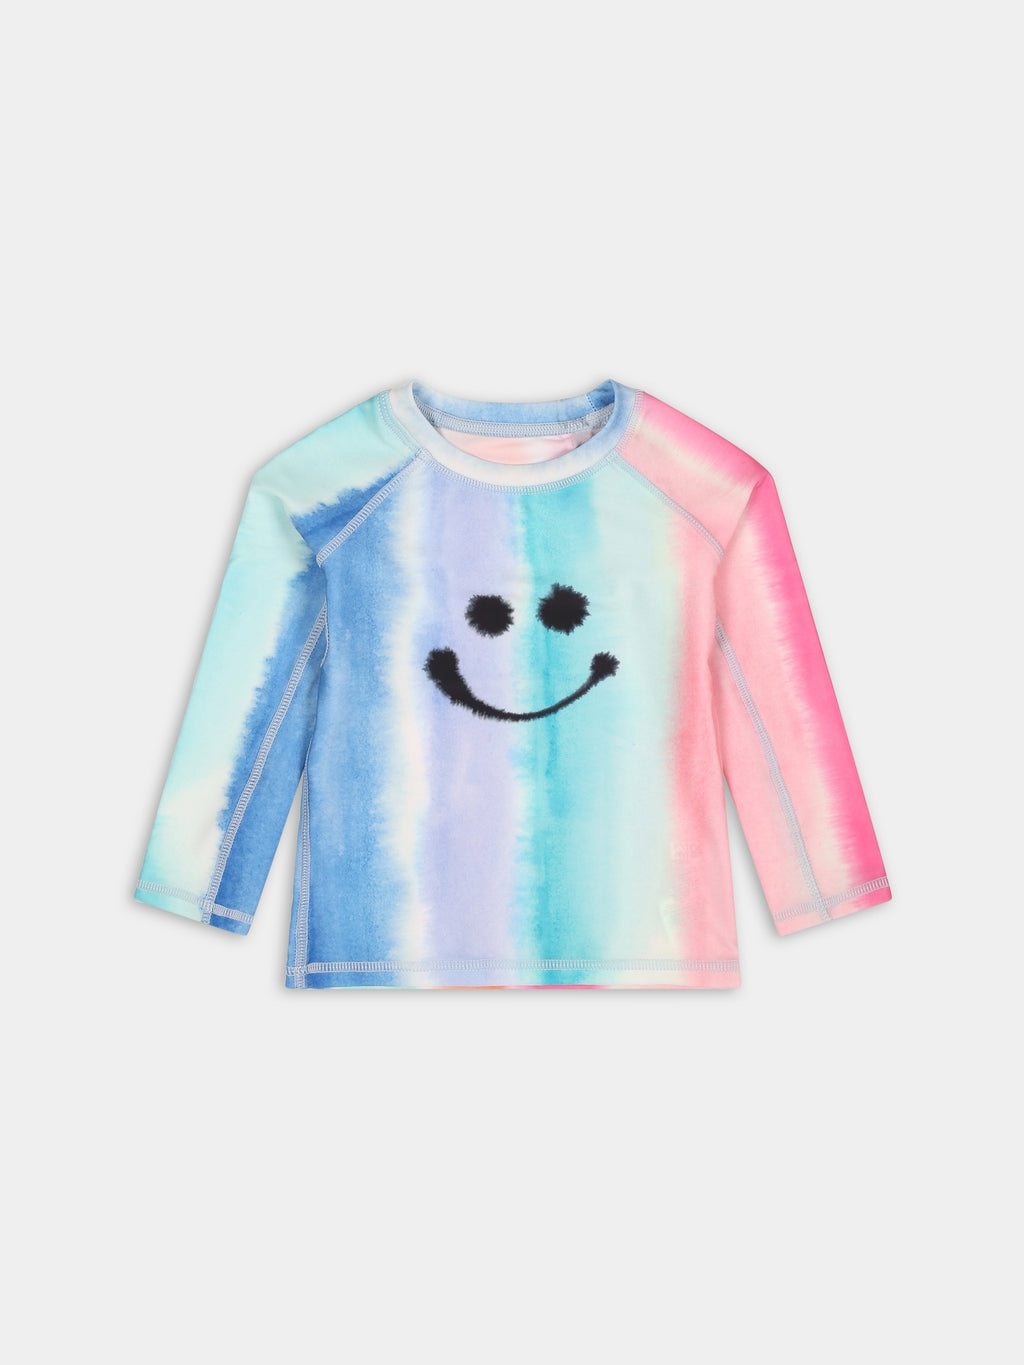 T-shirt multicolor pour bébé enfants avec smiley